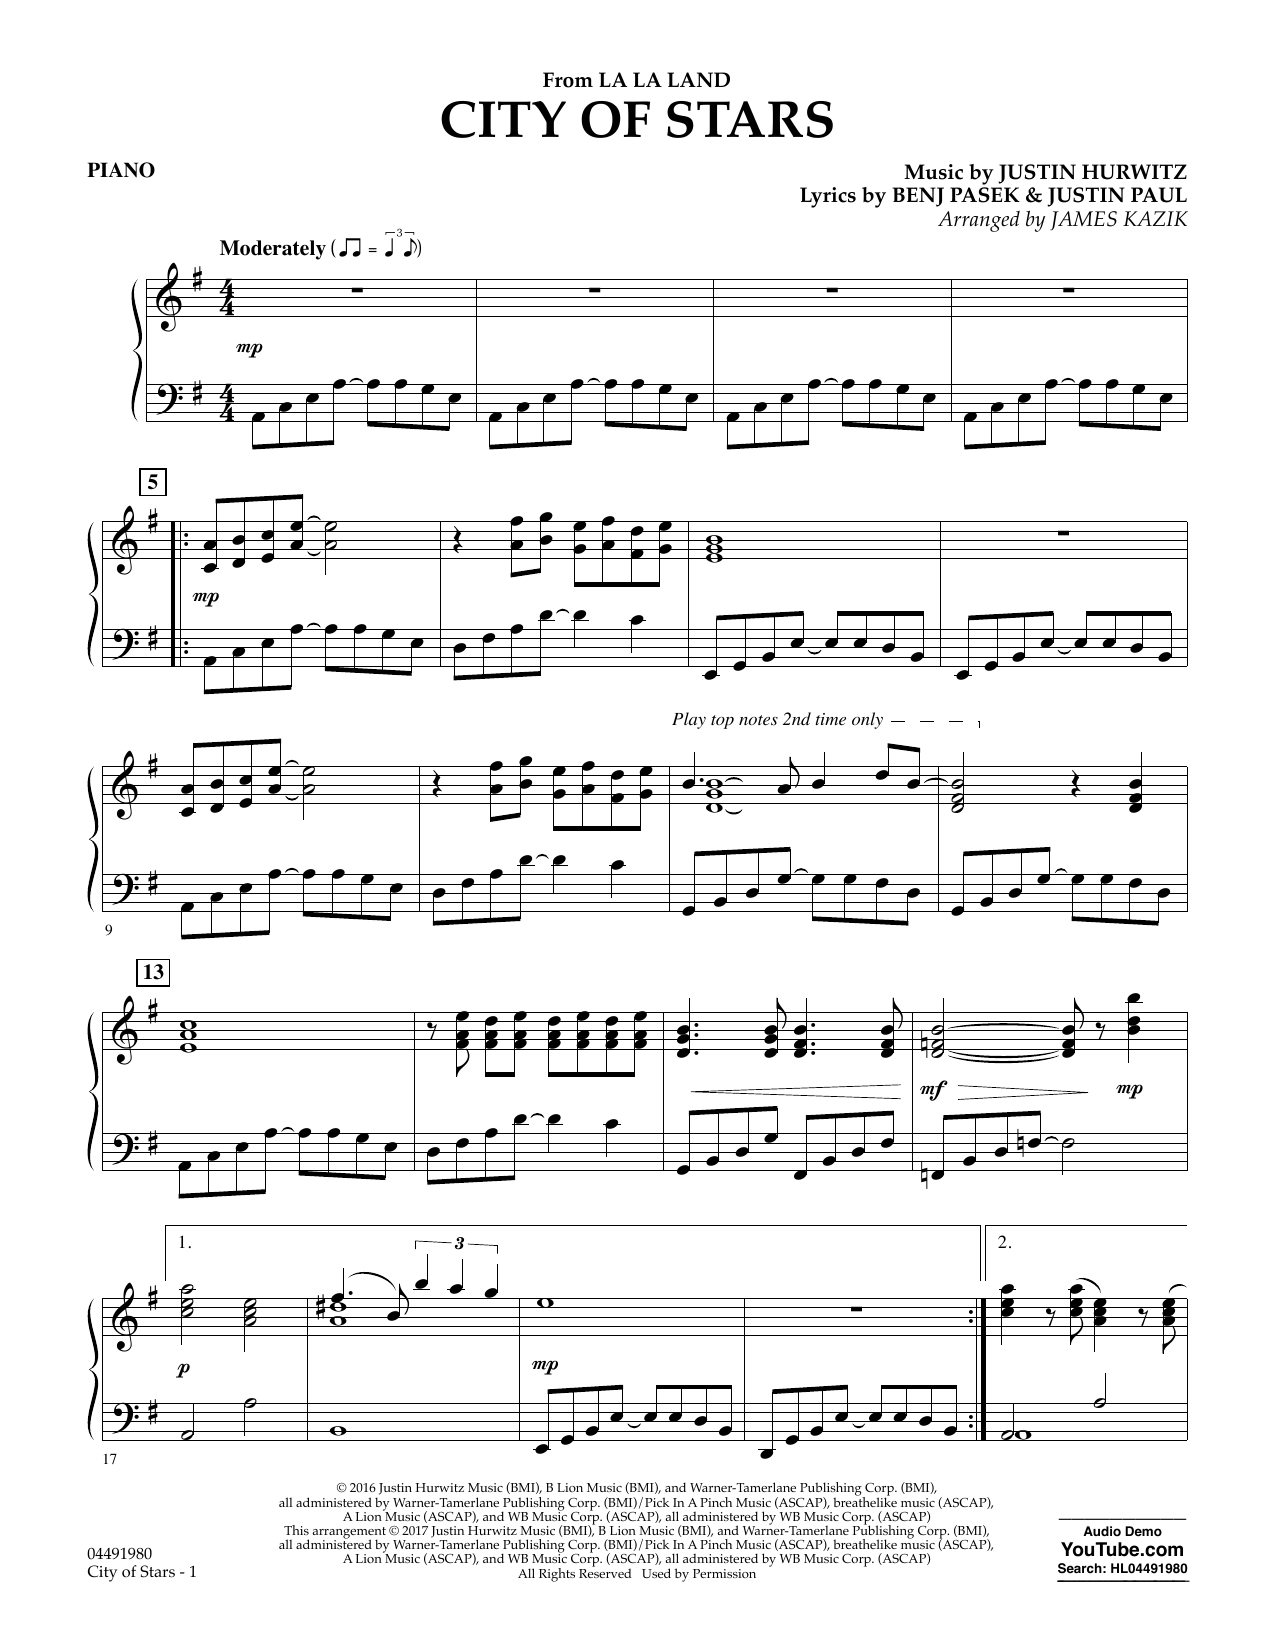 James Kazik "City of Stars (from La La Land) - Piano" Sheet Music...